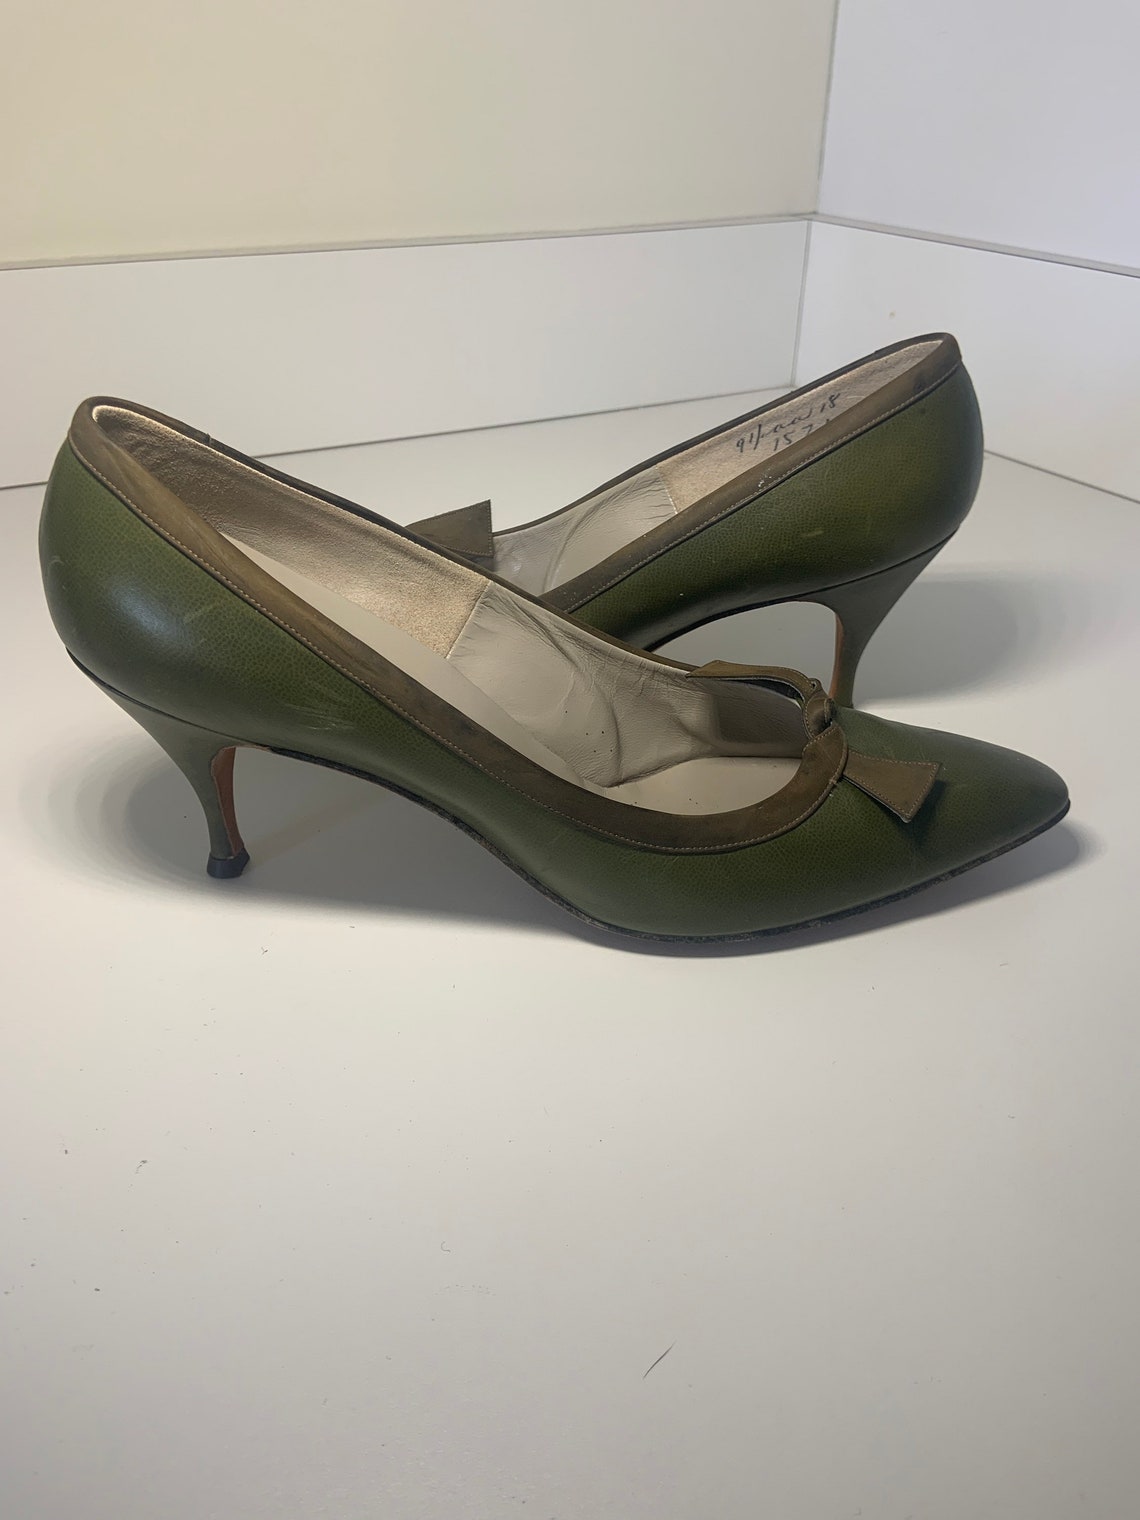 Customcraft Olive Green Pumps Vintage Ladies Shoes Heels | Etsy